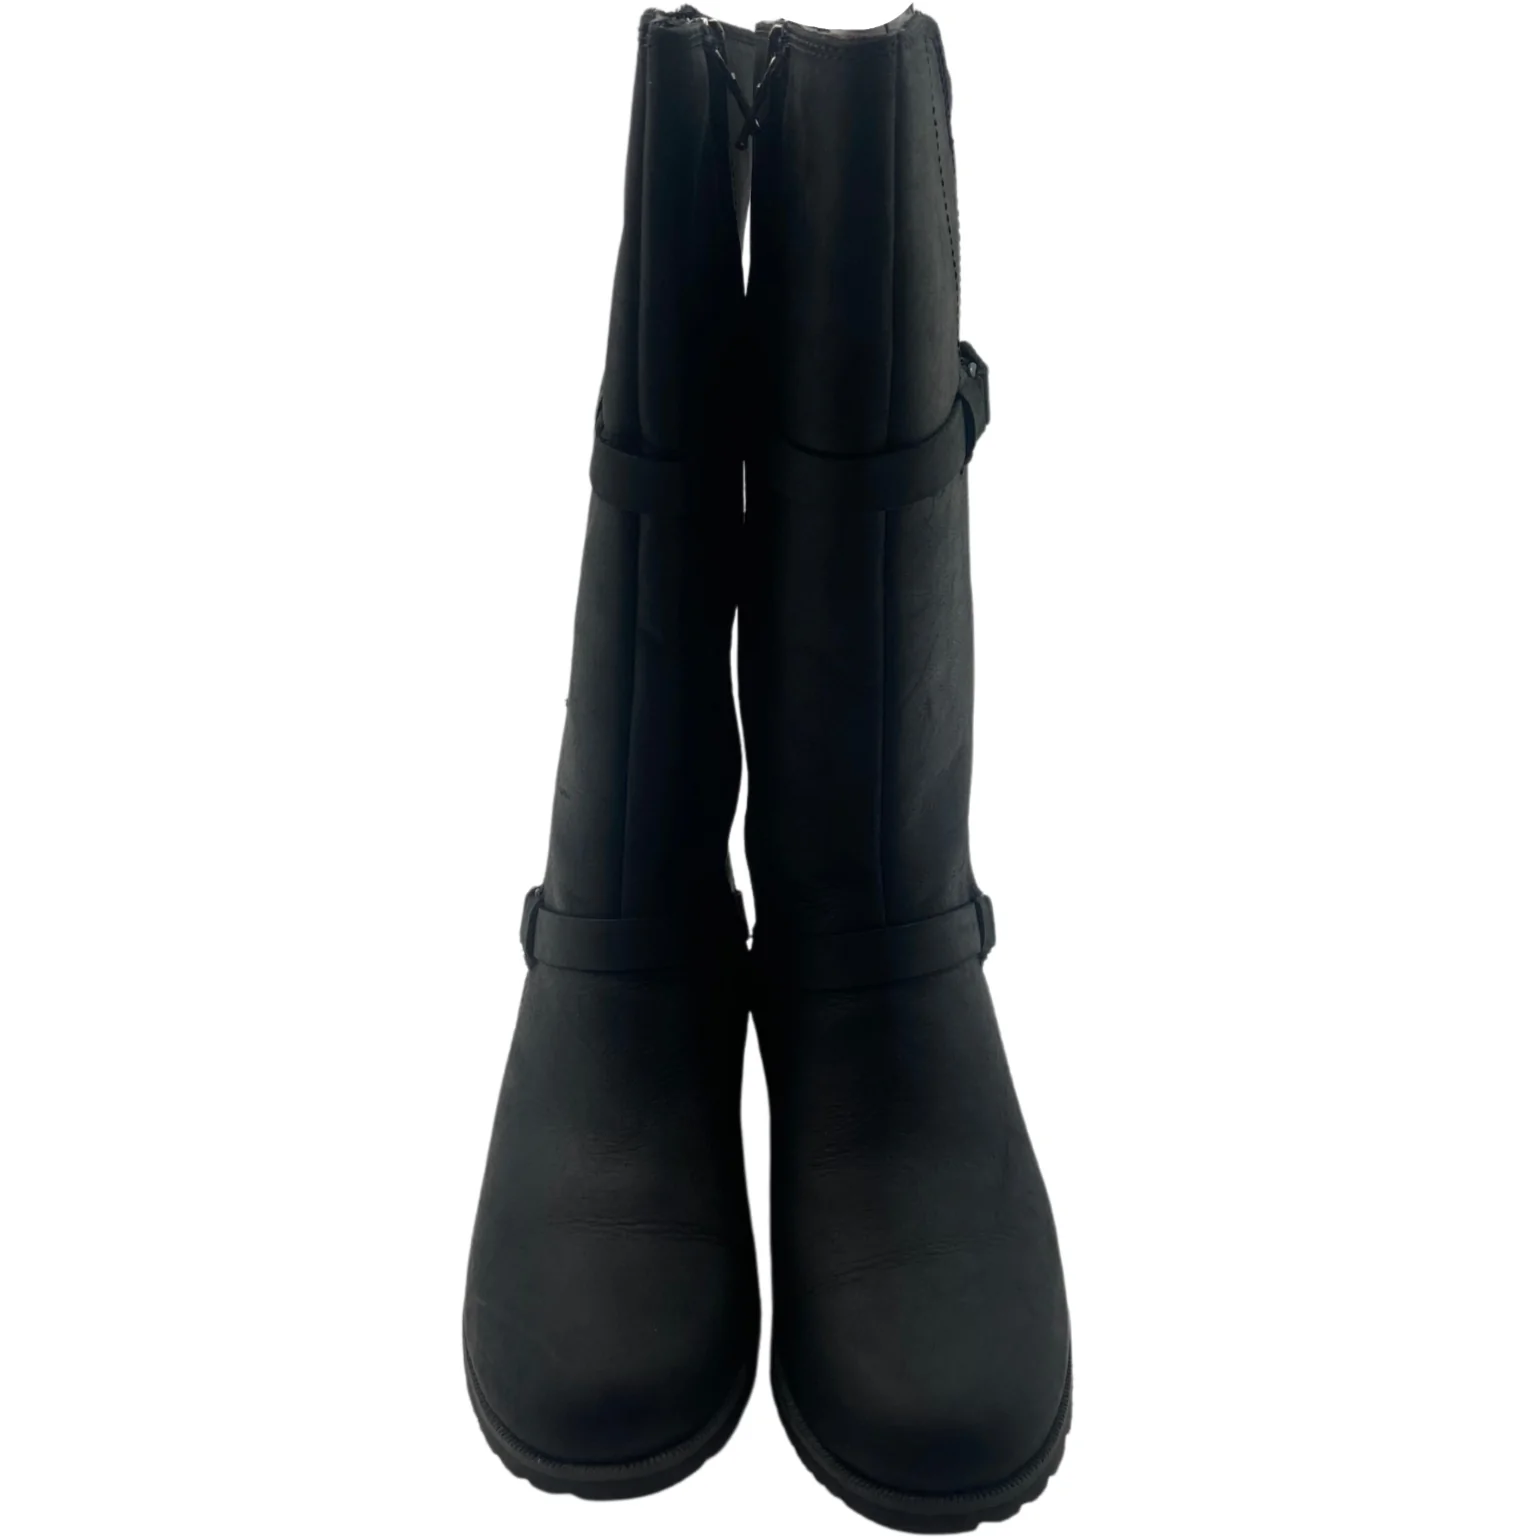 Teva: Women's Boots / Zip up / Delavina / Black / Size 5